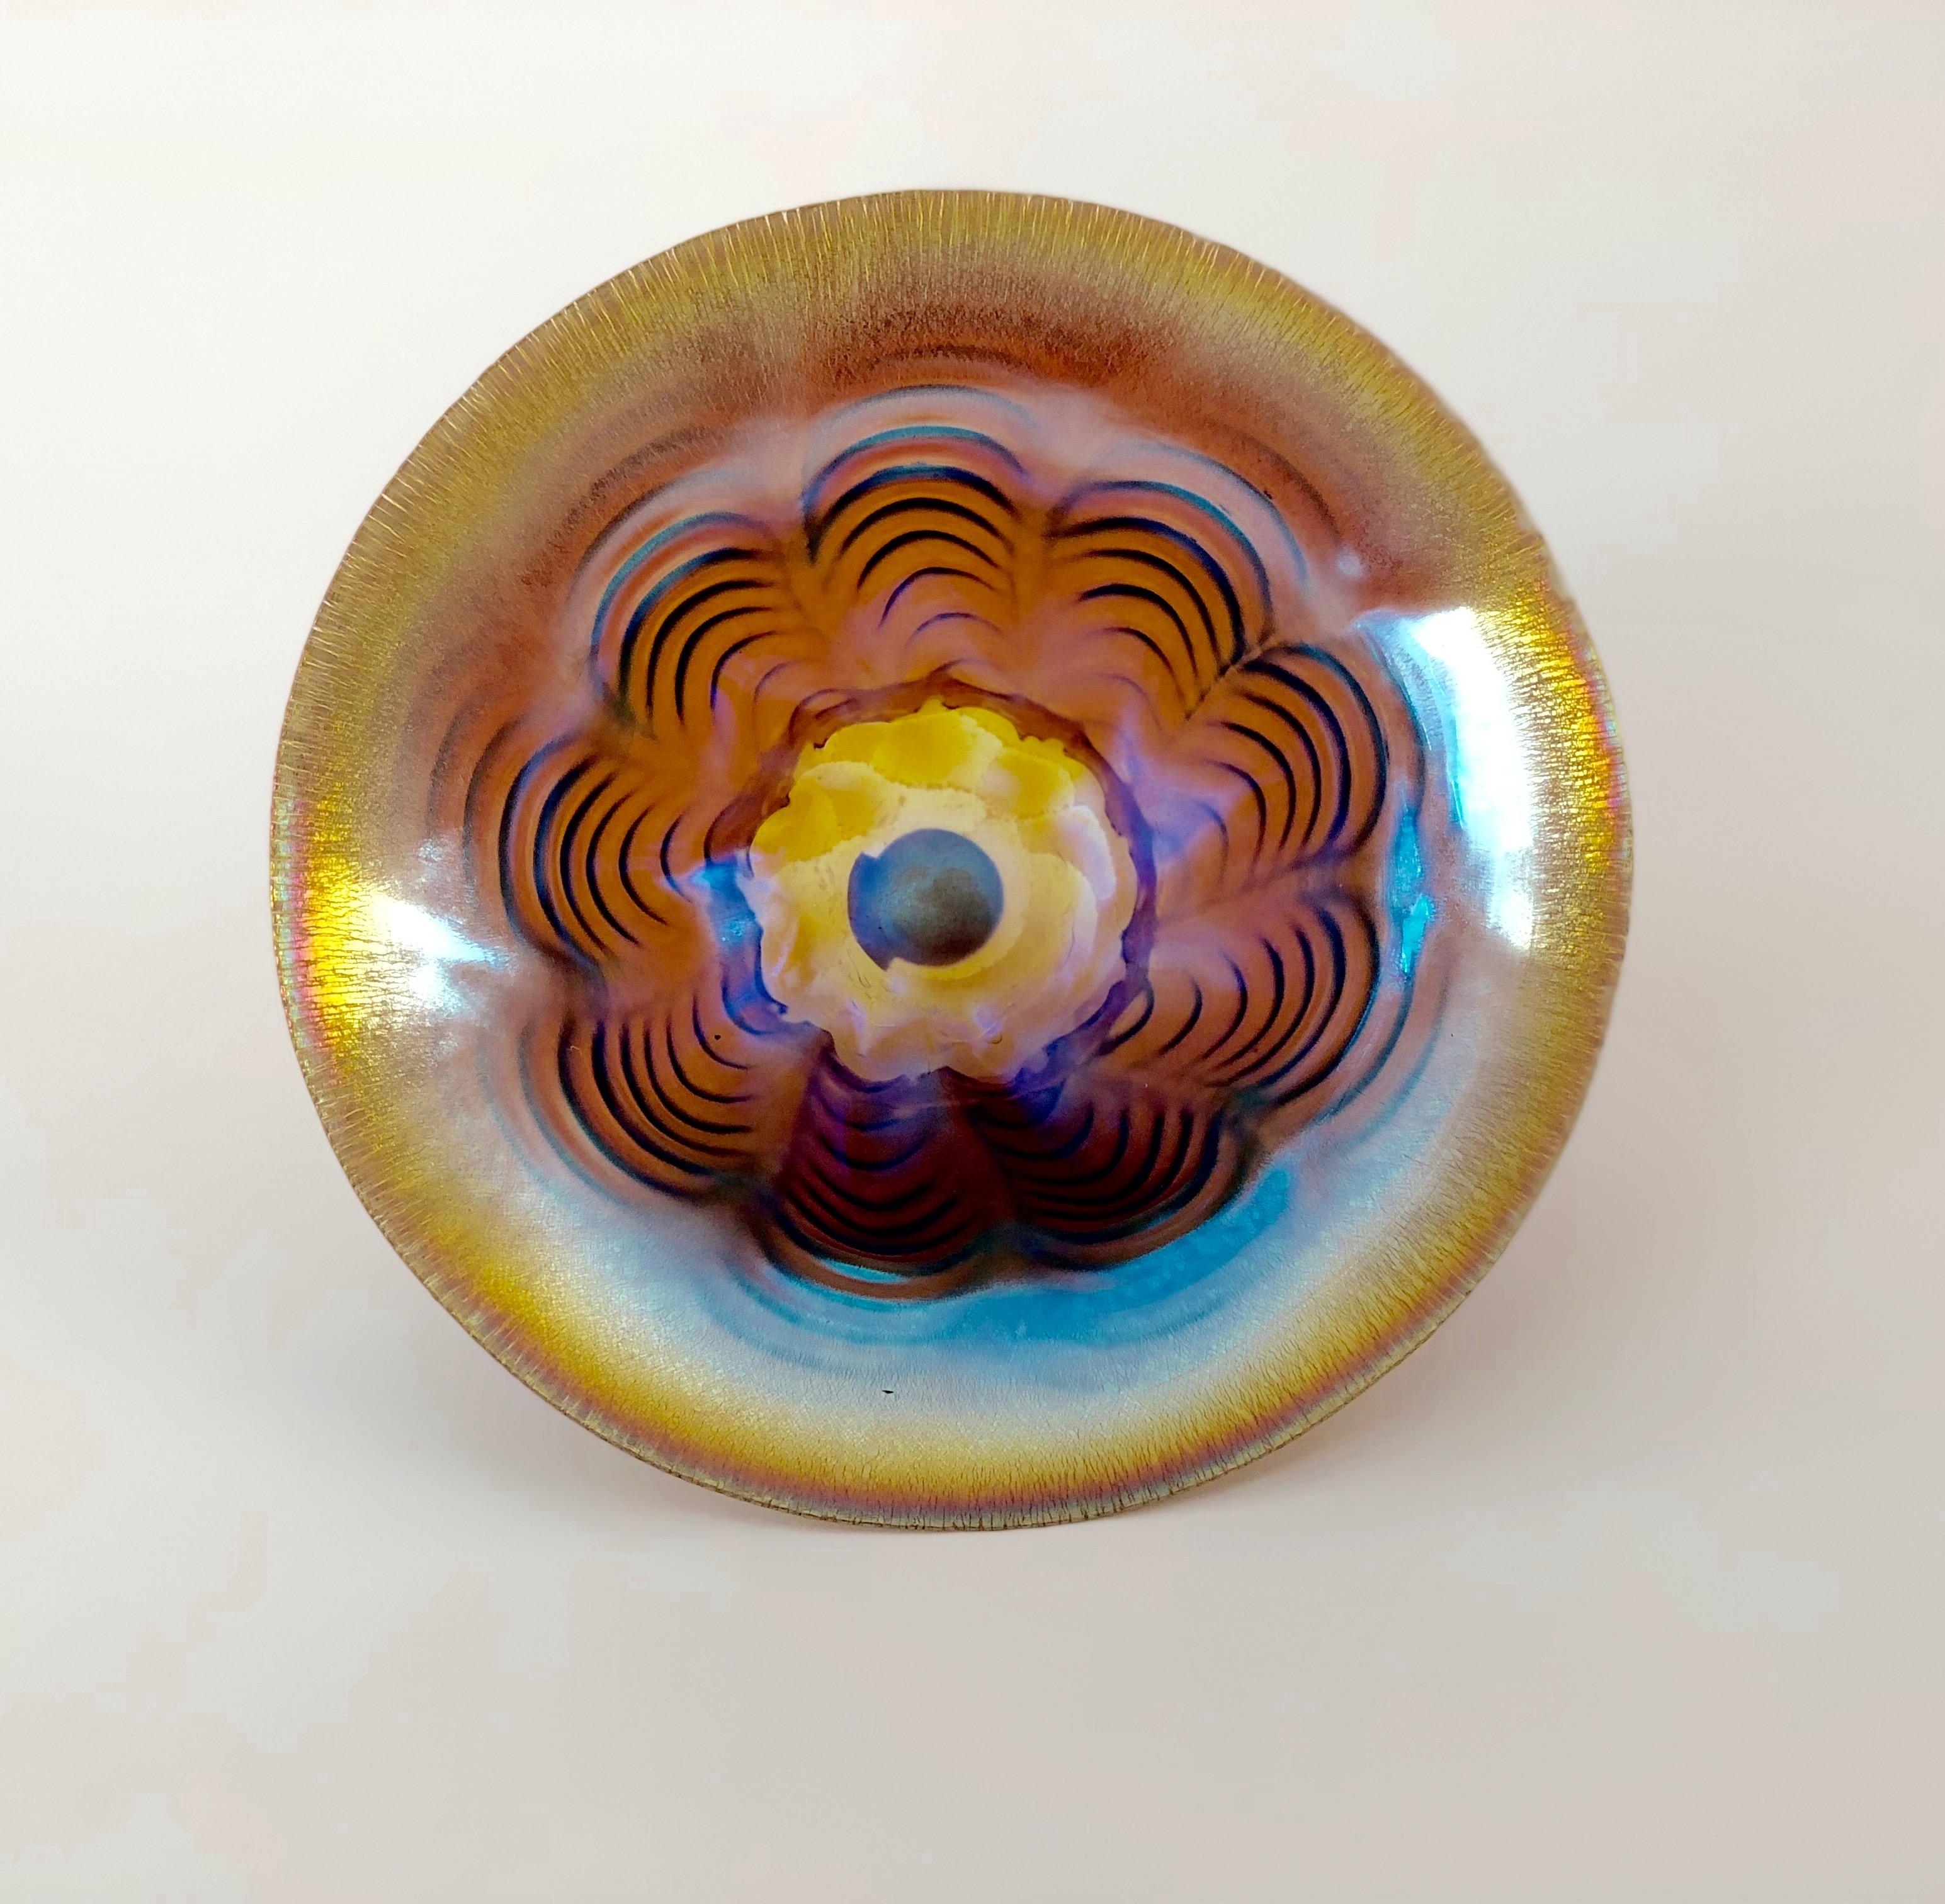 Petit bol en verre Art déco de la manufacture WMF, Allemagne. Ce bol appartient à la technique Ikora, qui a été brevetée par le producteur au début des années 1920. Cette technique permet d'iriser le verre transparent.
Sur le fond du bol se trouve